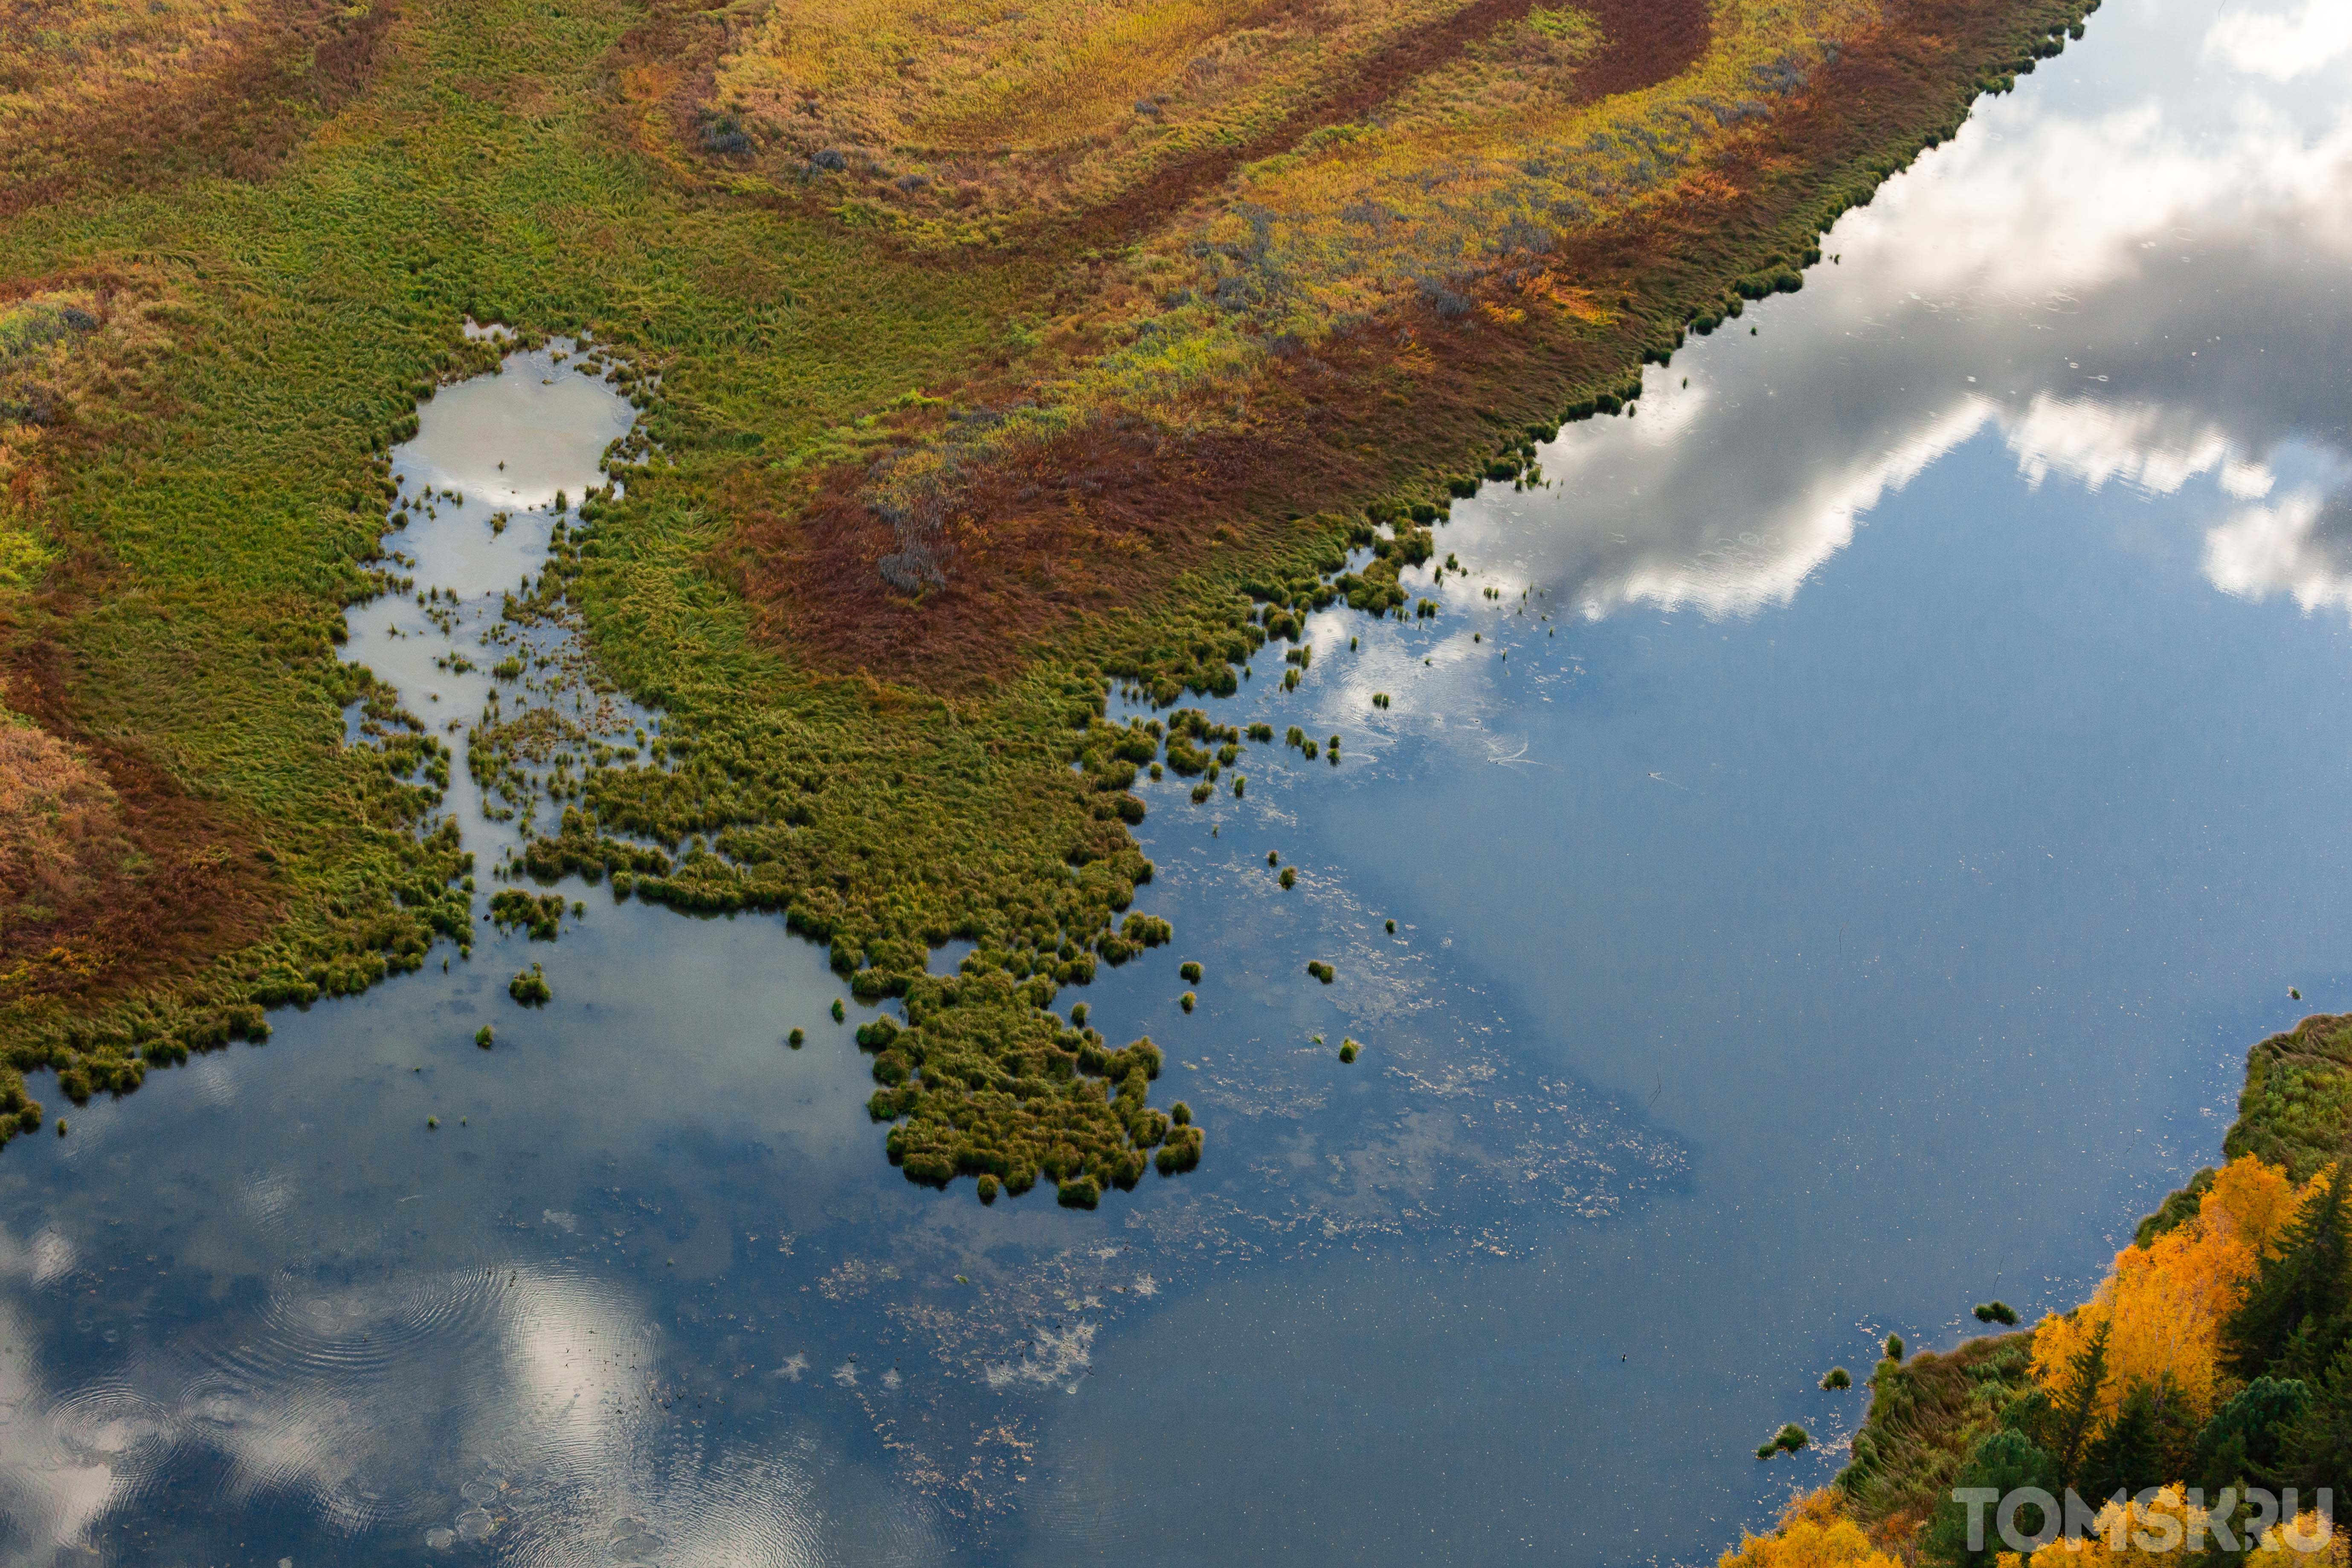 Васюганское болото западная сибирь. Васюганские болота Томская область. Томск Васюганское болото. Васюганские болота, Западная Сибирь. Васюганское болото заповедник.